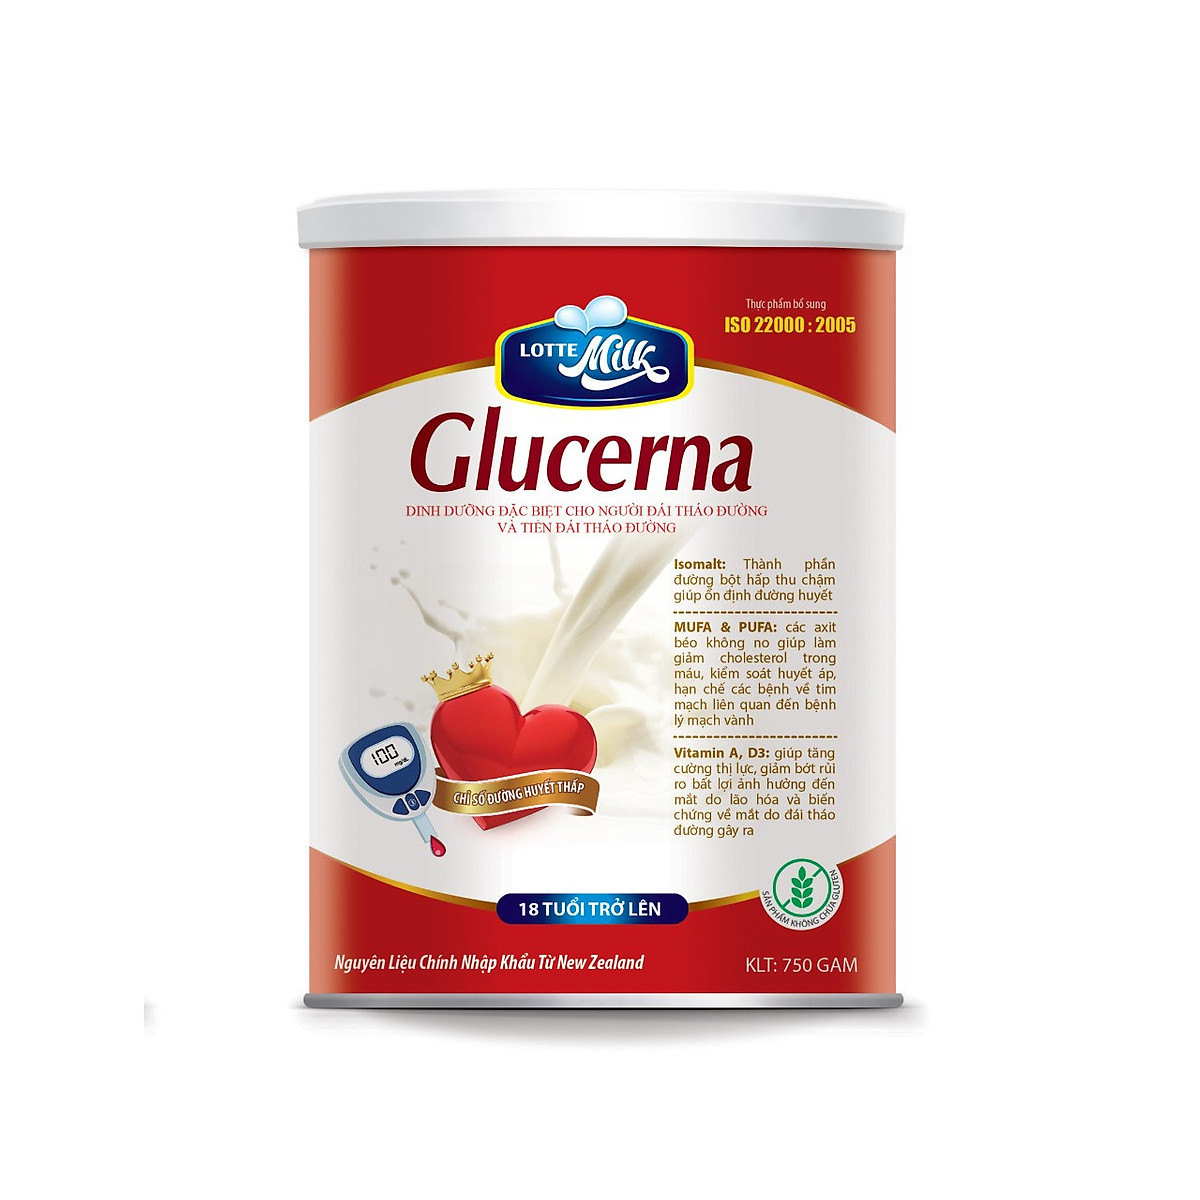 Sữa glucerna đáp ứng đầy đủ các tiêu chuẩn dinh dưỡng quốc tế và được chứng nhận ISO 22000: 2005 về an toàn thực phẩm